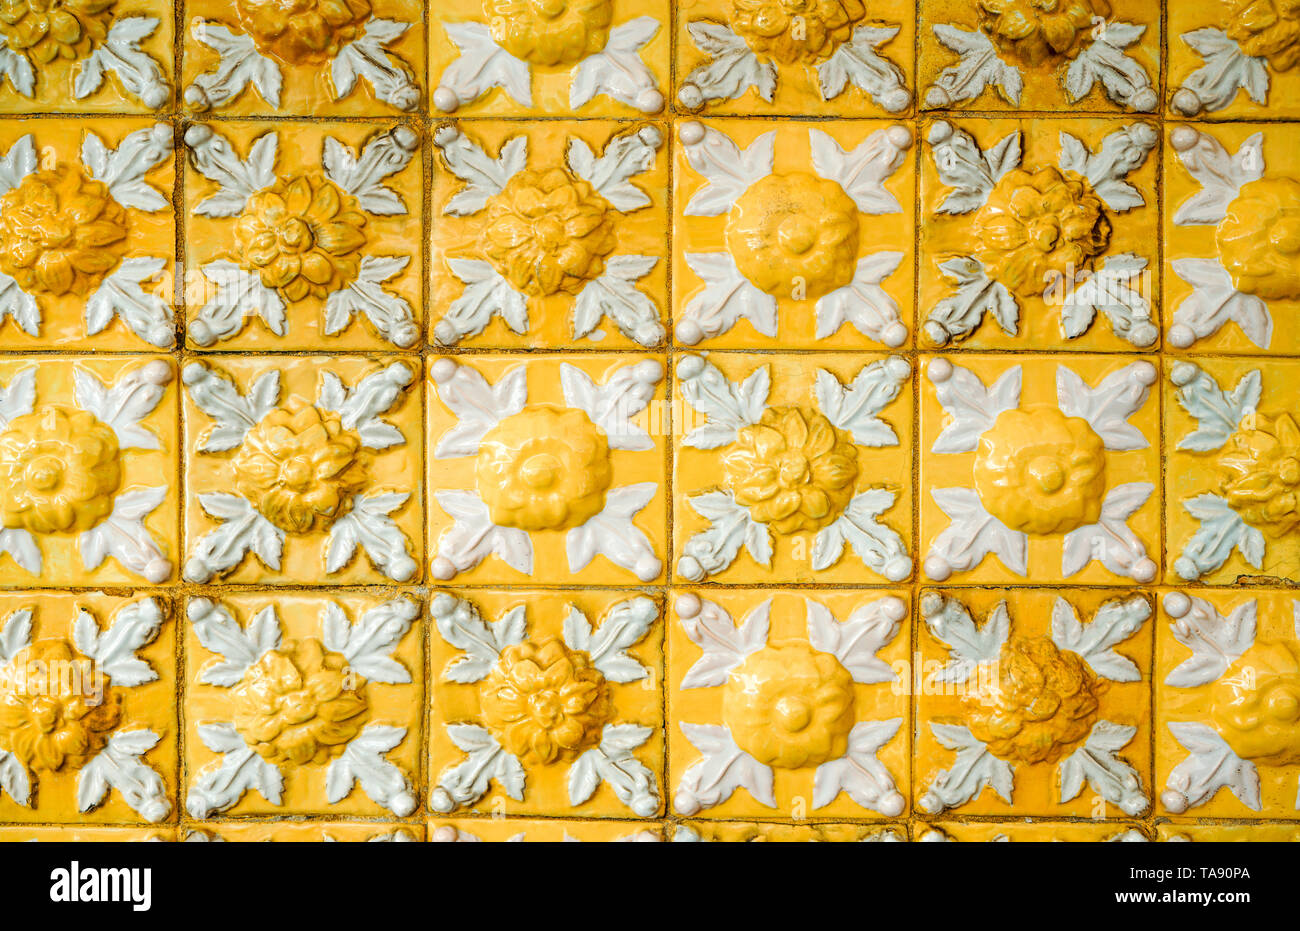 Vieux et sale de secours jaune vif, avec motif floral. Les carreaux de céramique émaillée Vintage la texture et l'arrière-plan. Banque D'Images